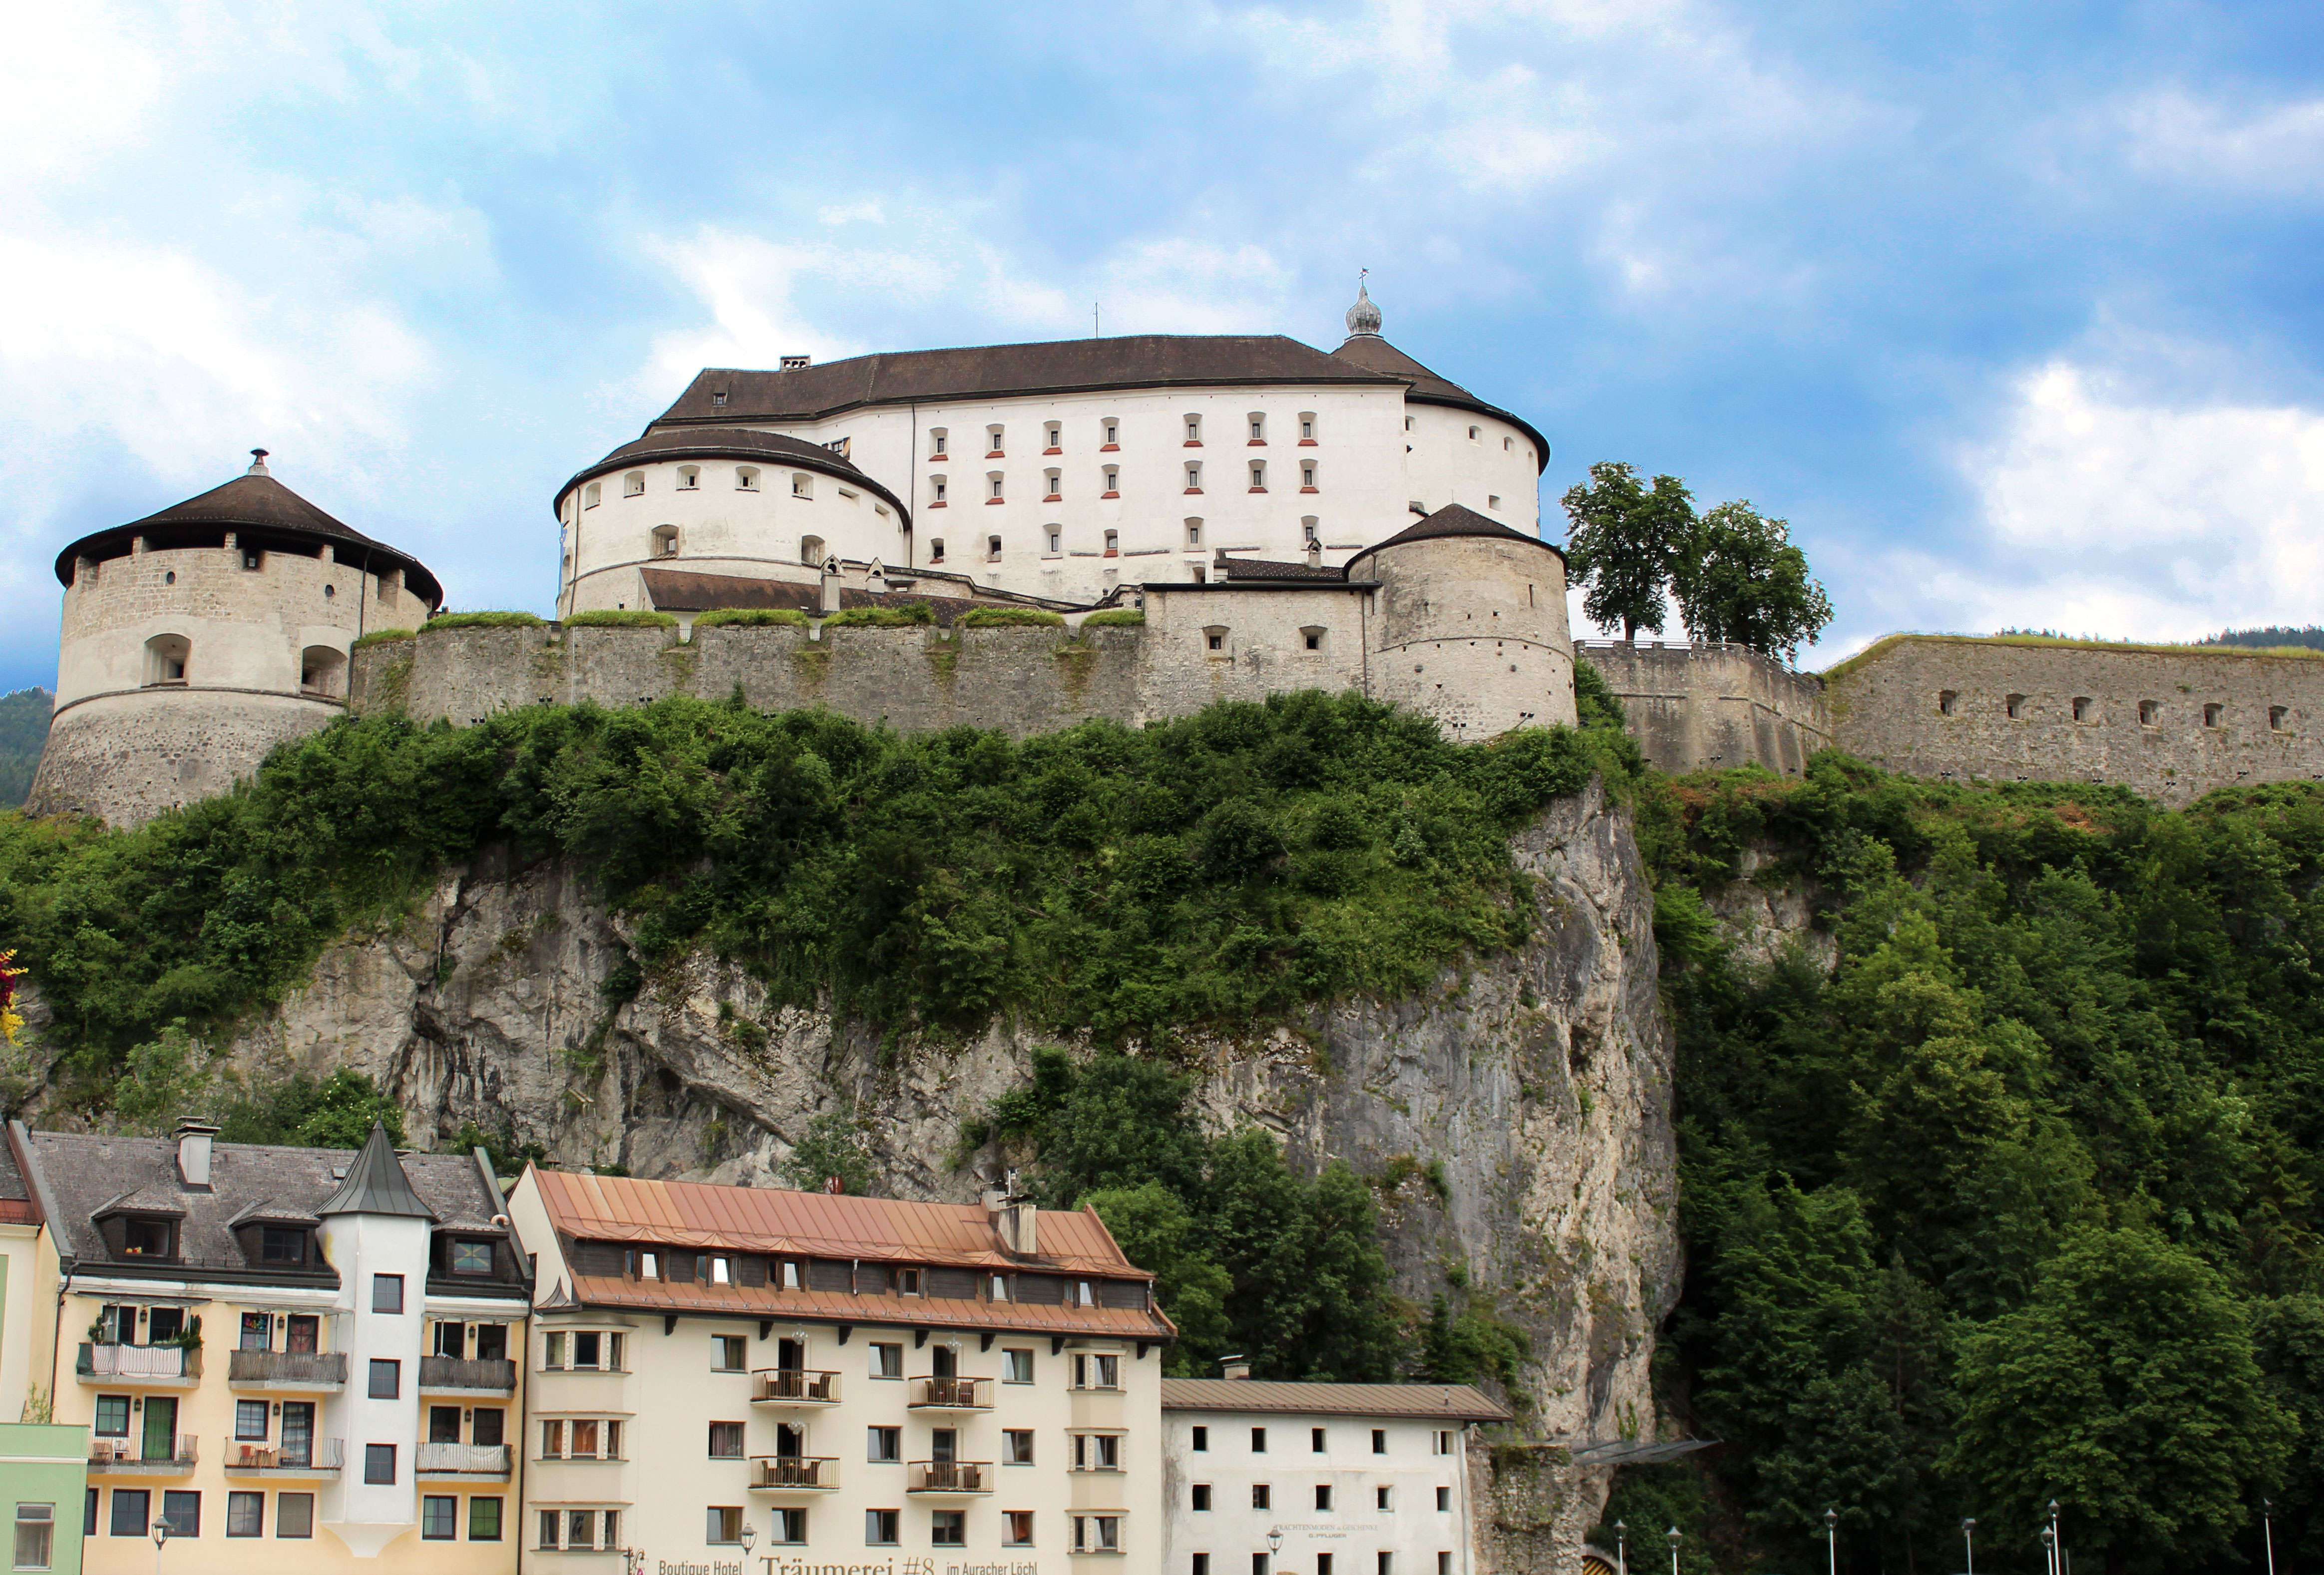 Hrad v rakouském Kufsteinu je opravdu nádherný. Doporučuji všemi deseti!